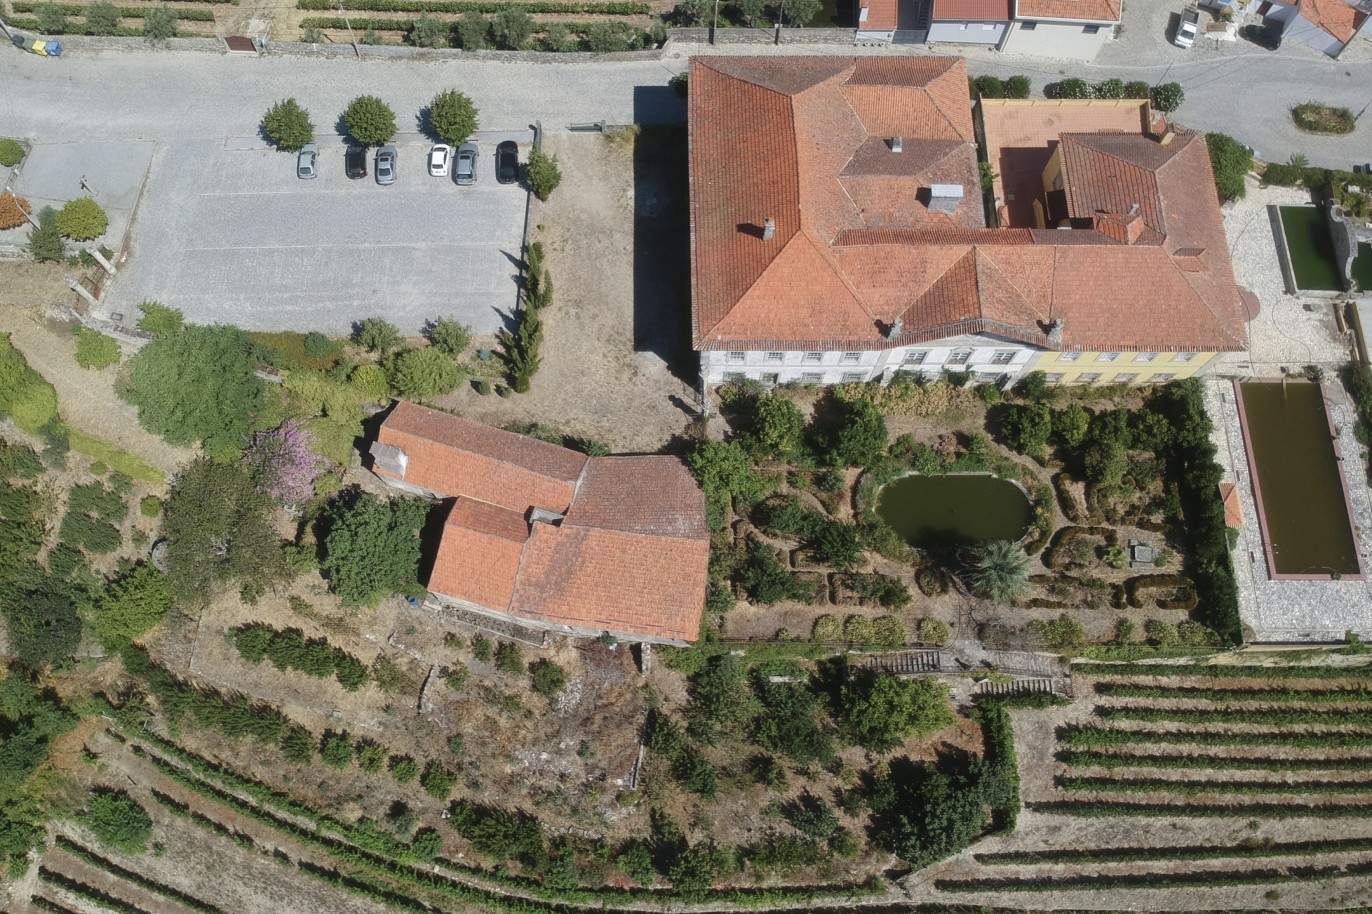 Vente : restauration du Palacete avec jardins et fontaine centenaire, à Lamego, Valeé du Douro, nord du Portugal_207352